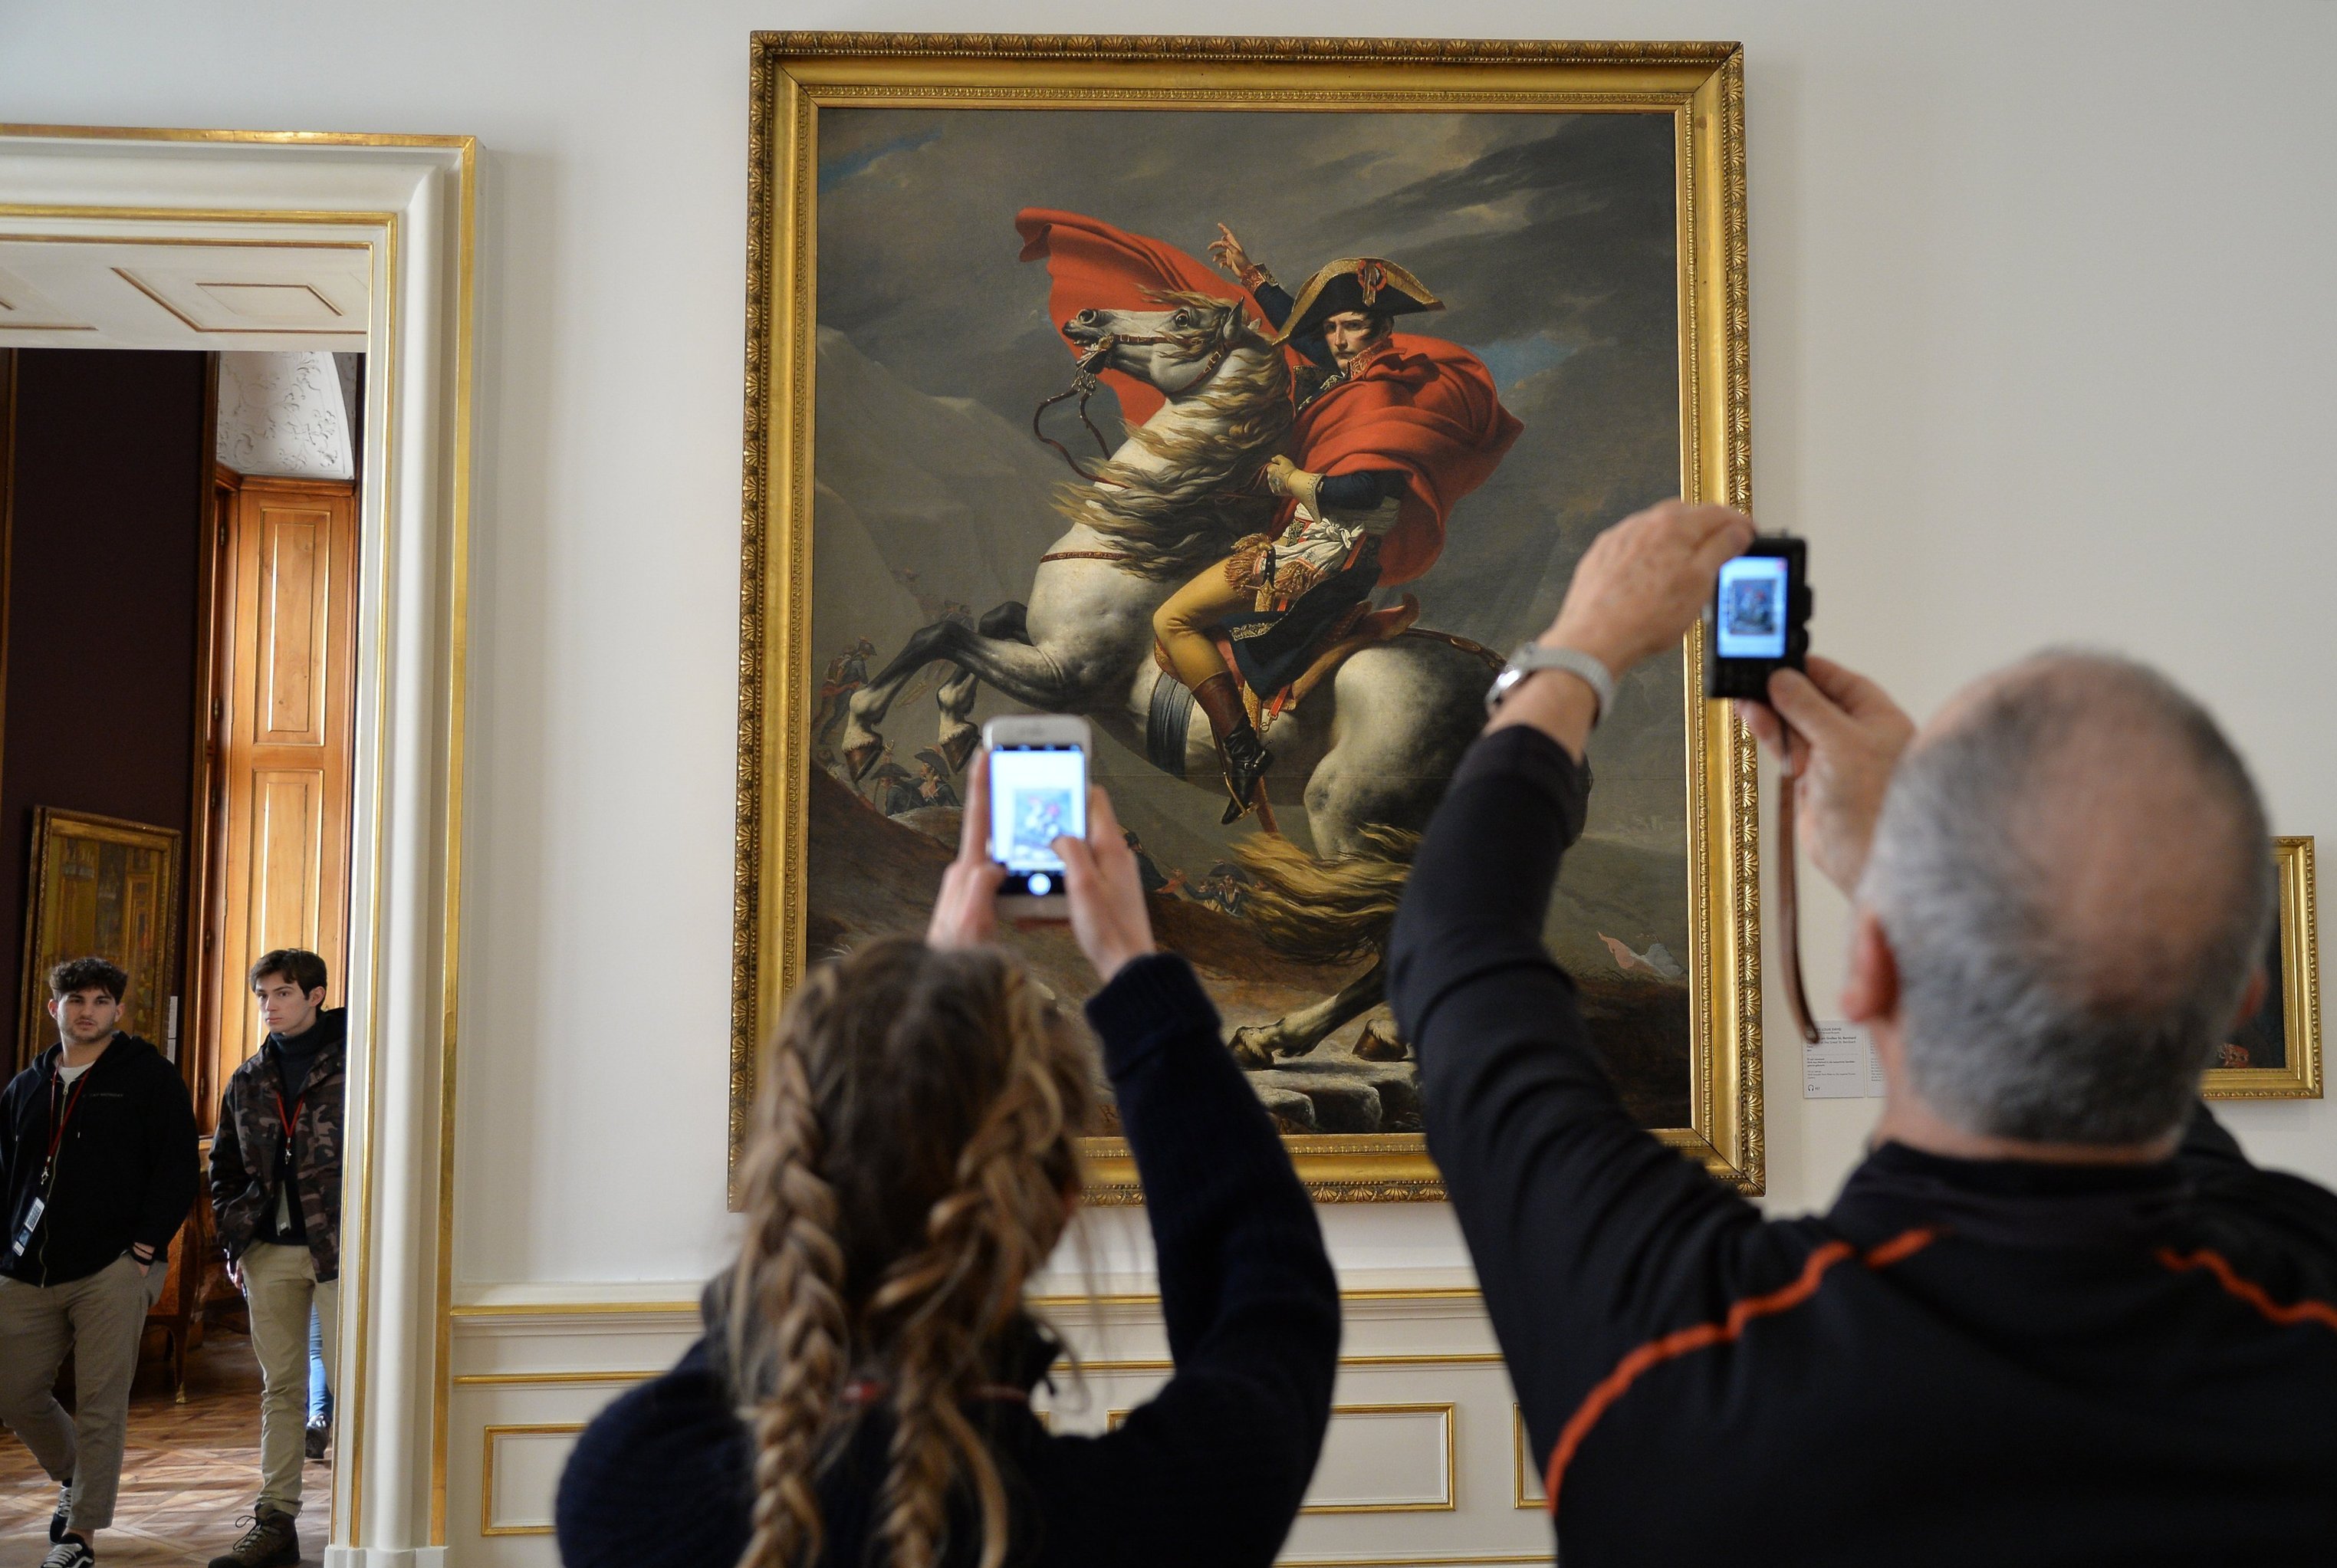 Посетители у картины Жака-Луи Давида "Наполеон на перевале Сен-Бернар" в галерее Бельведер - художественном музее в венском дворце Бельведер